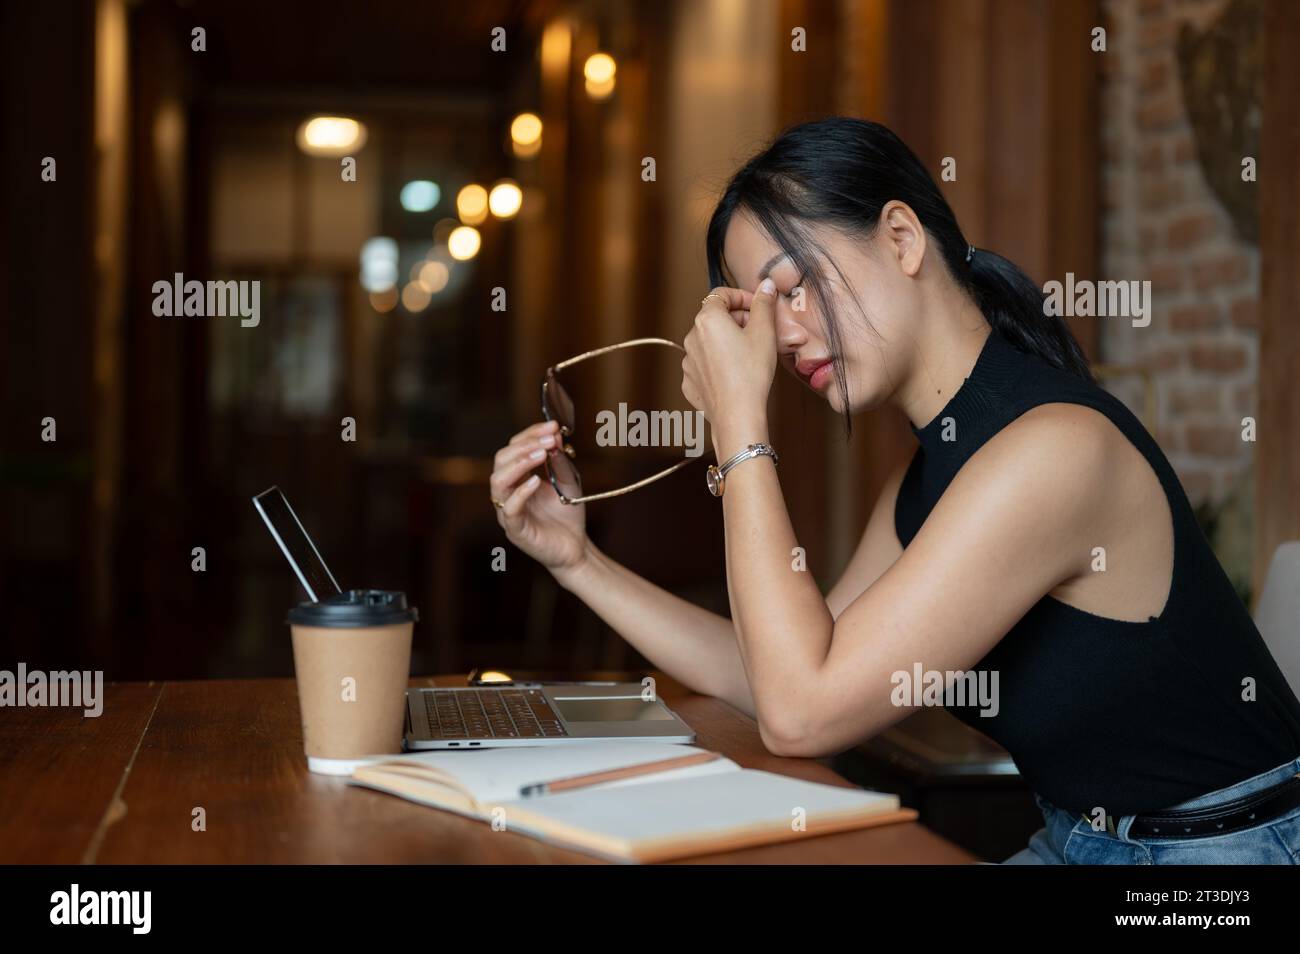 Una donna asiatica stanca e sovraccarica si sta togliendo gli occhiali da vista, sentendo affaticamento per gli occhi dopo aver guardato lo schermo per troppo tempo mentre lavorava sul suo compito Foto Stock